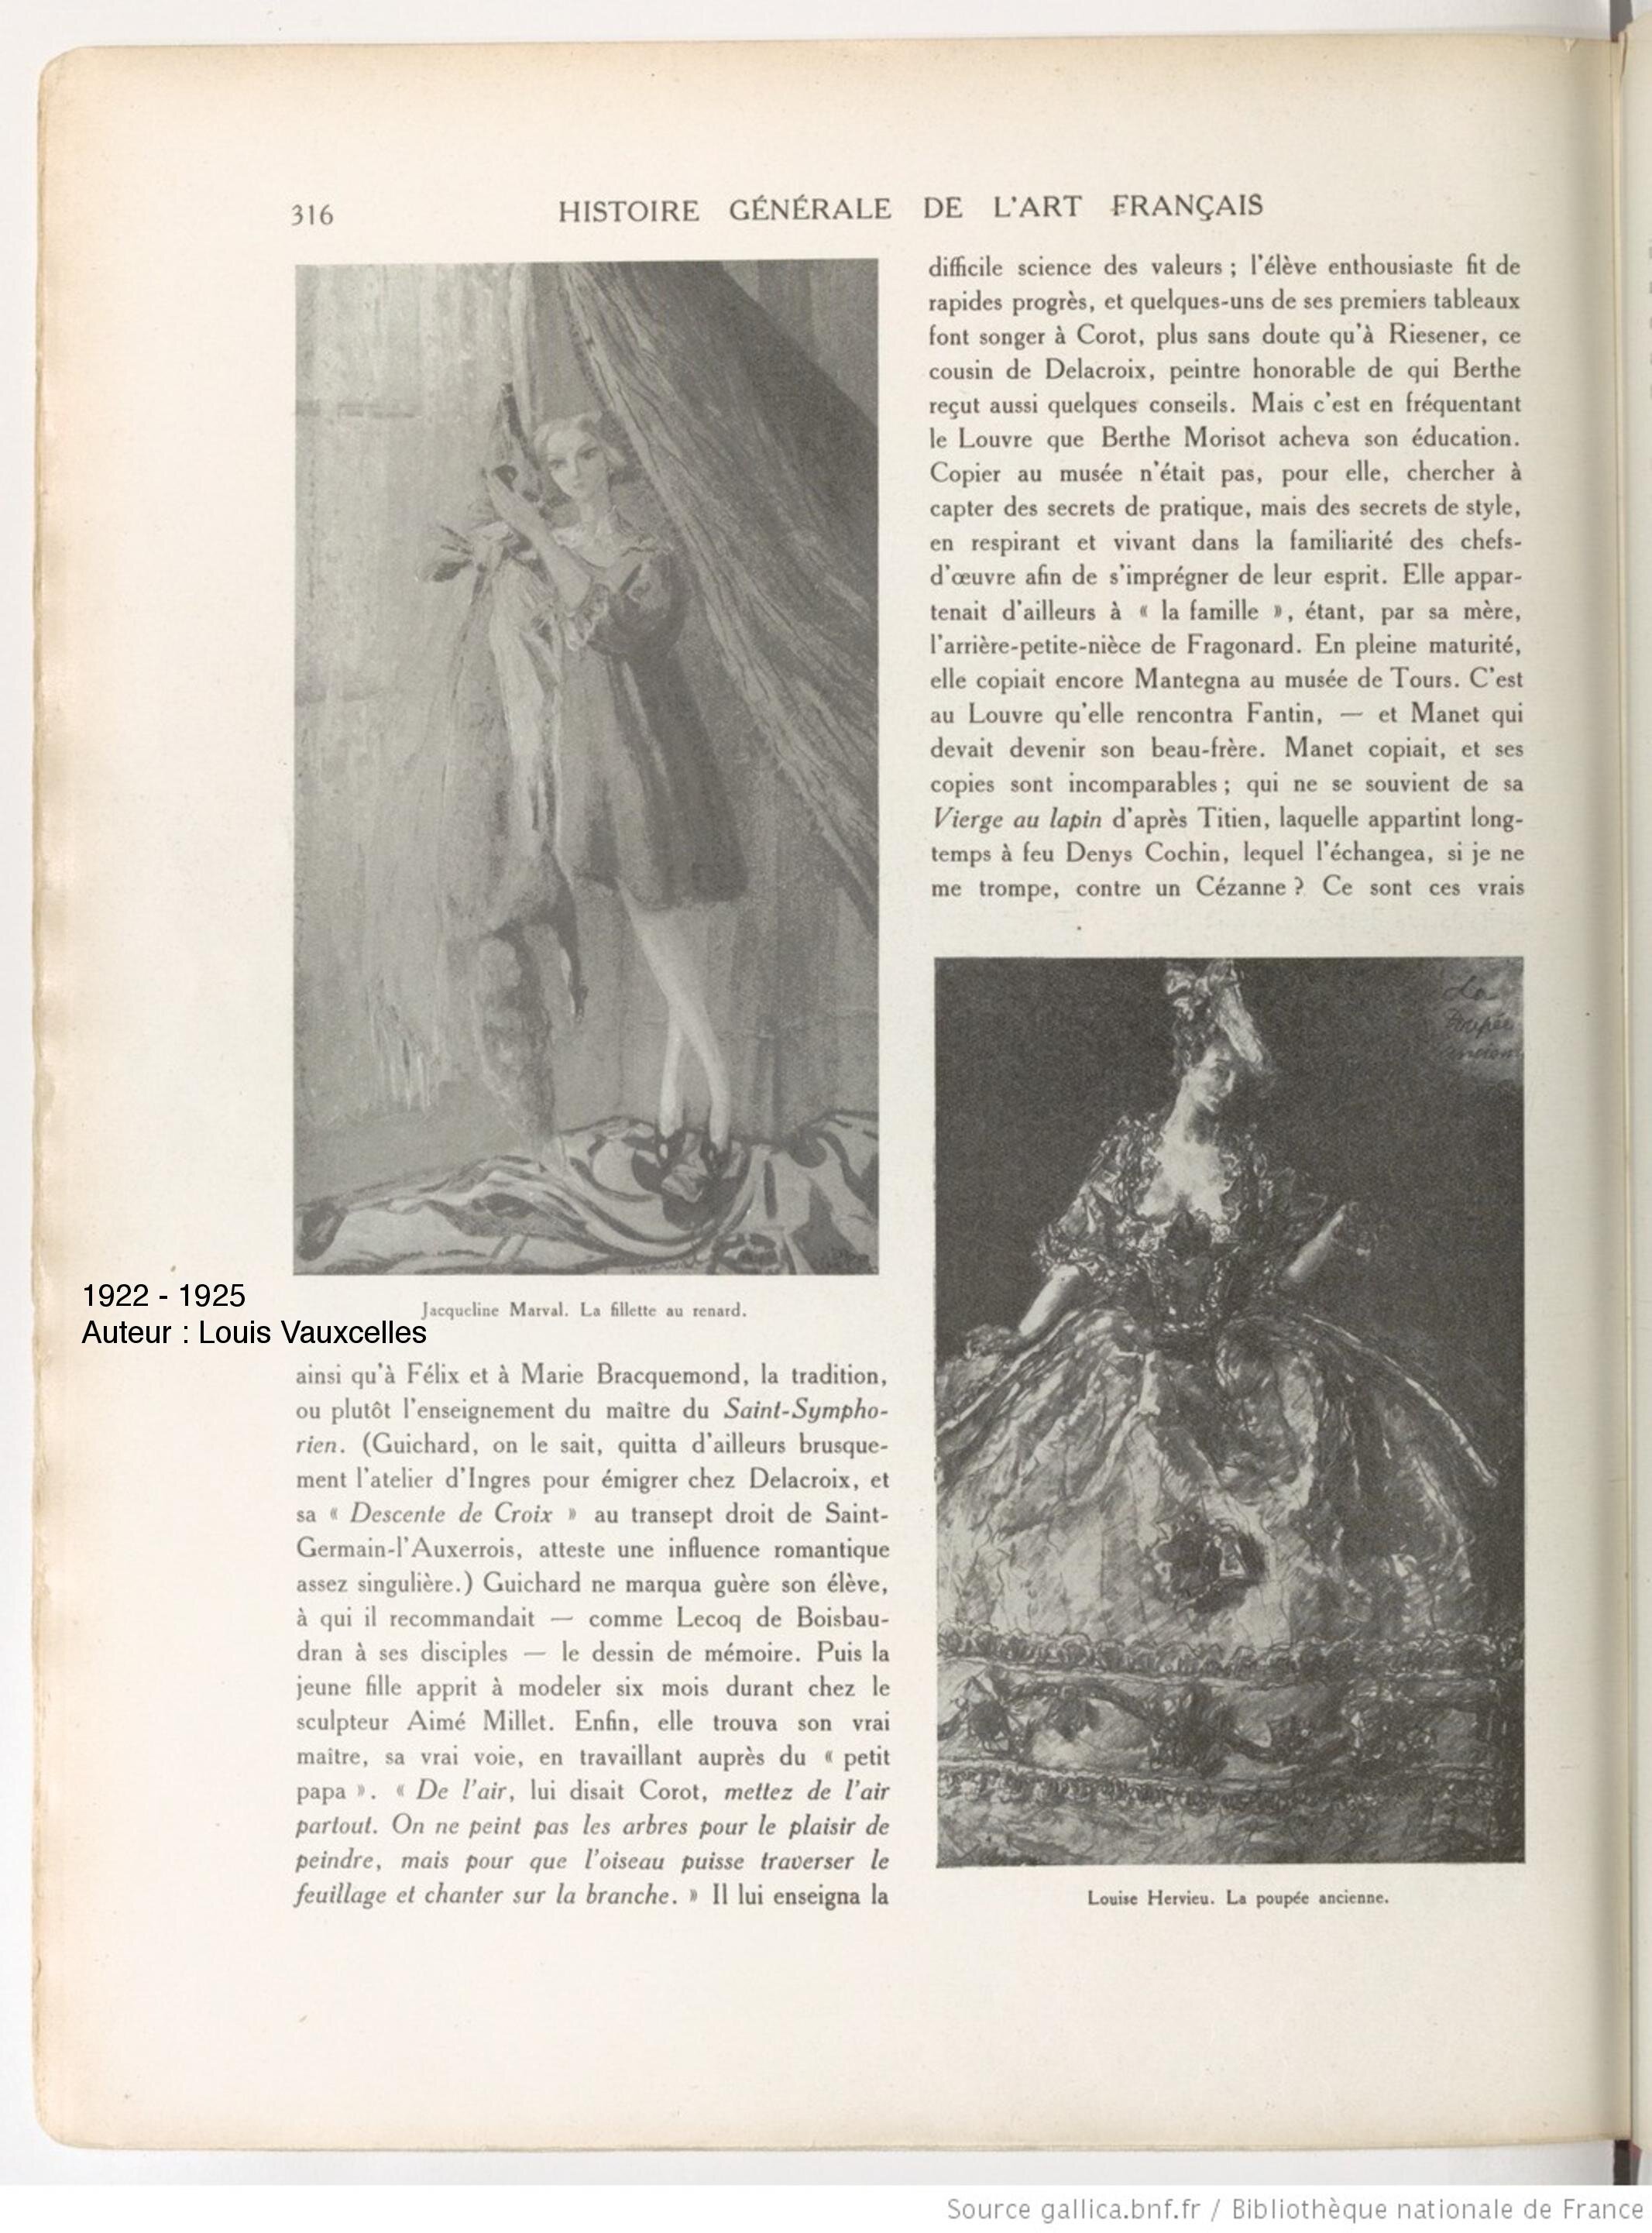 Histoire Générale de l'Art Français, Louis Vauxcelles, 1925 (Copy)